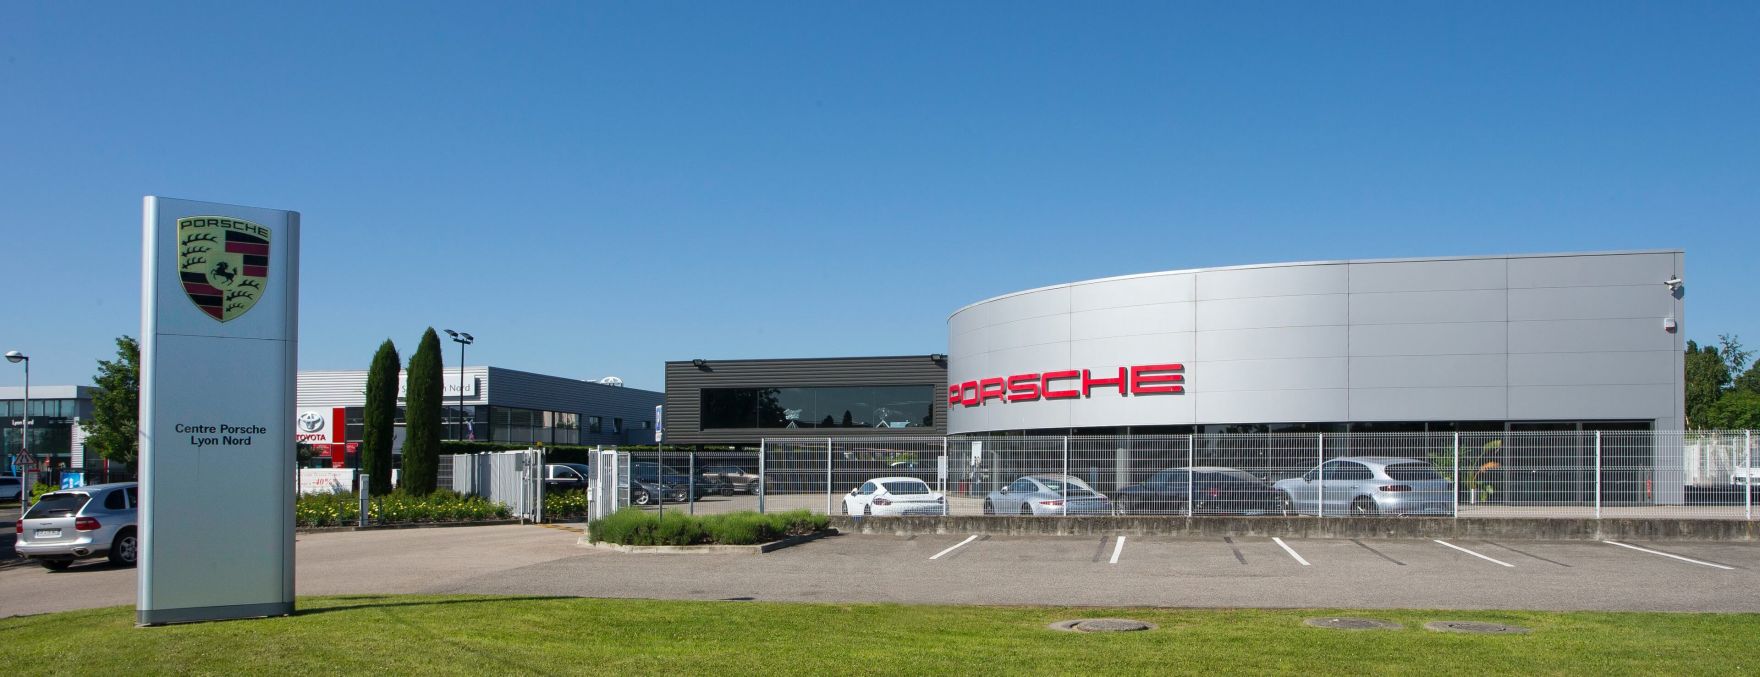 Centre Porsche Lyon Nord